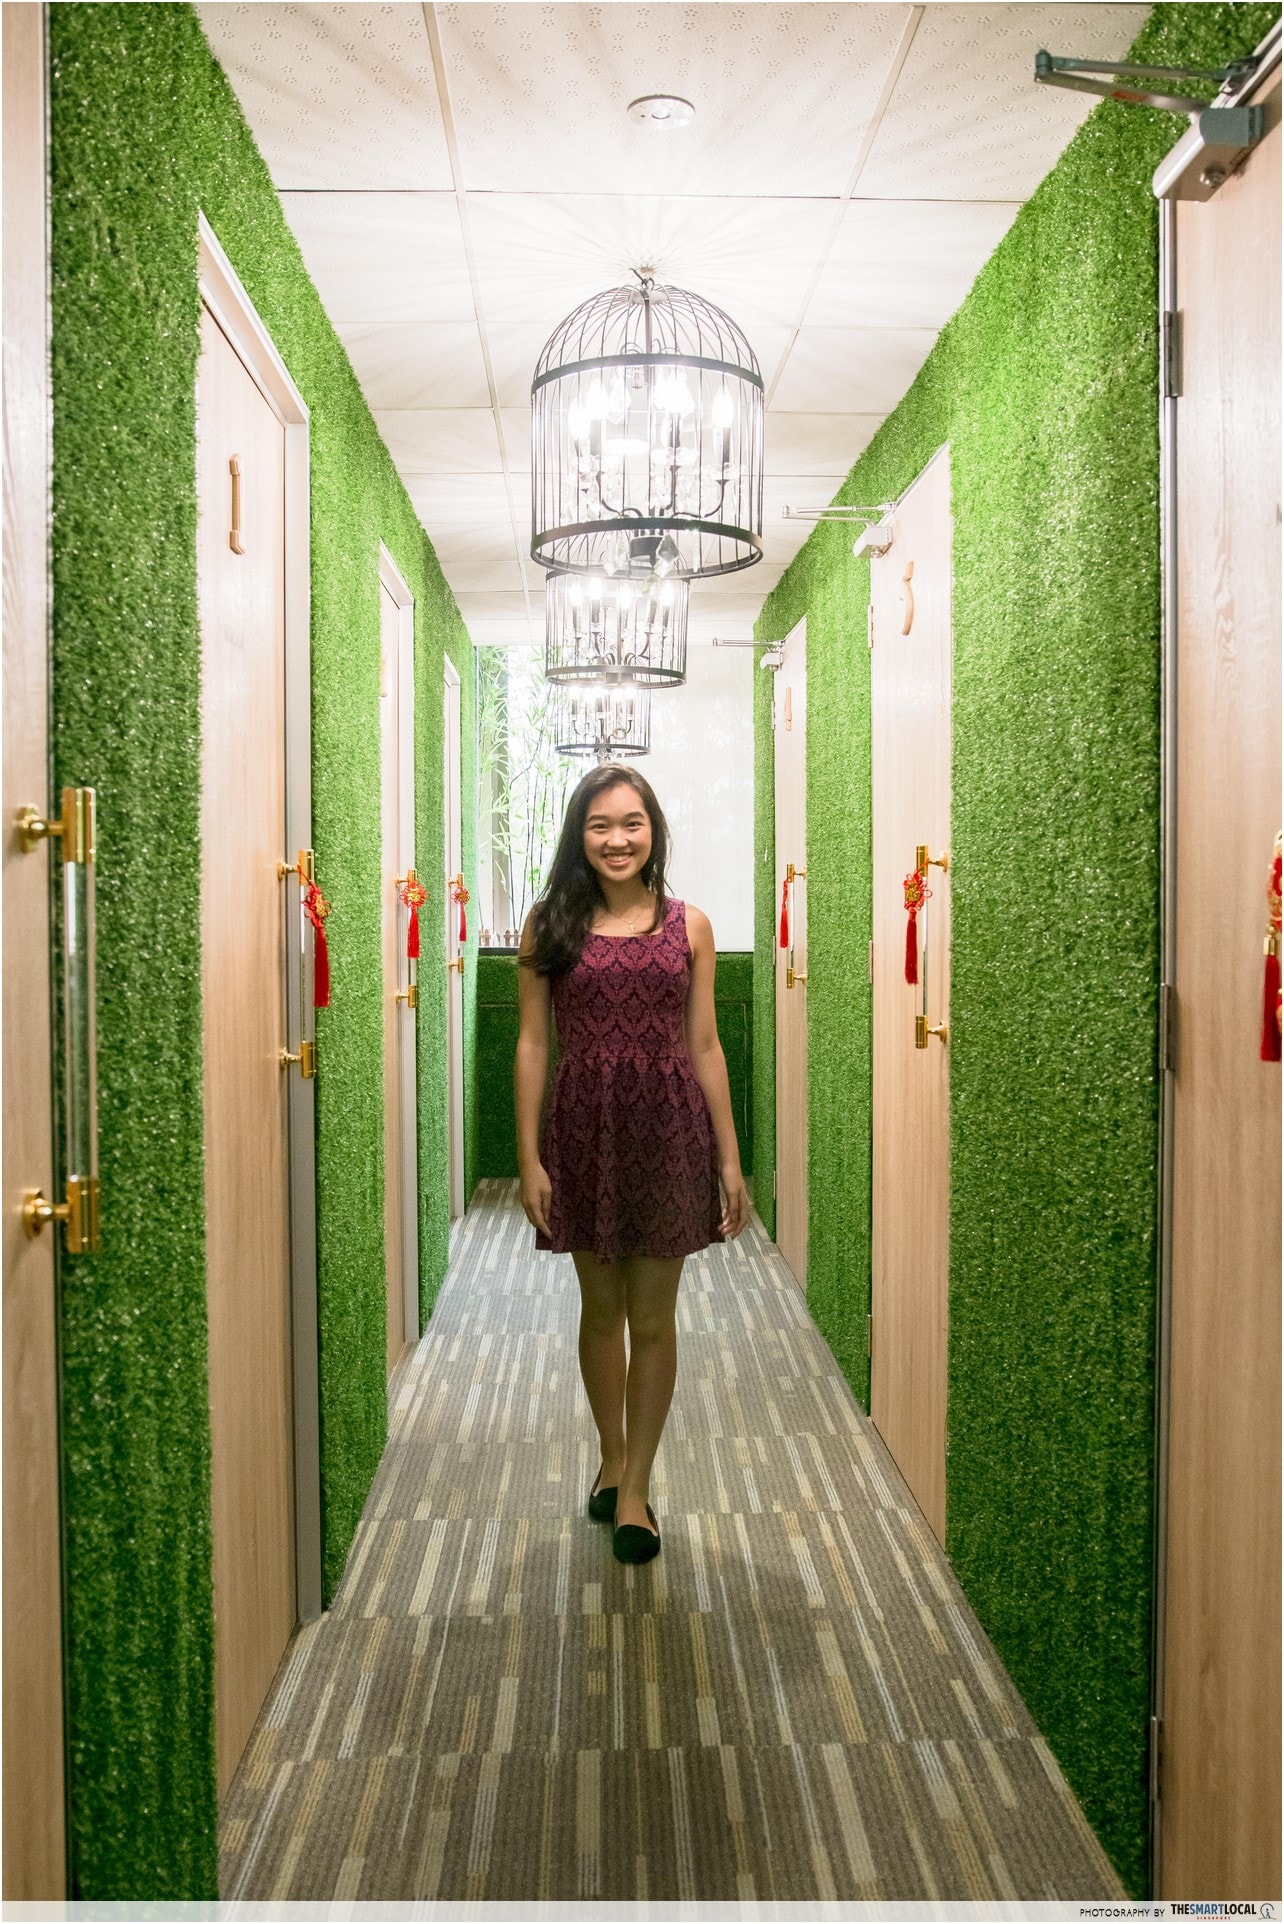 Mirage Aesthetic Green Corridor